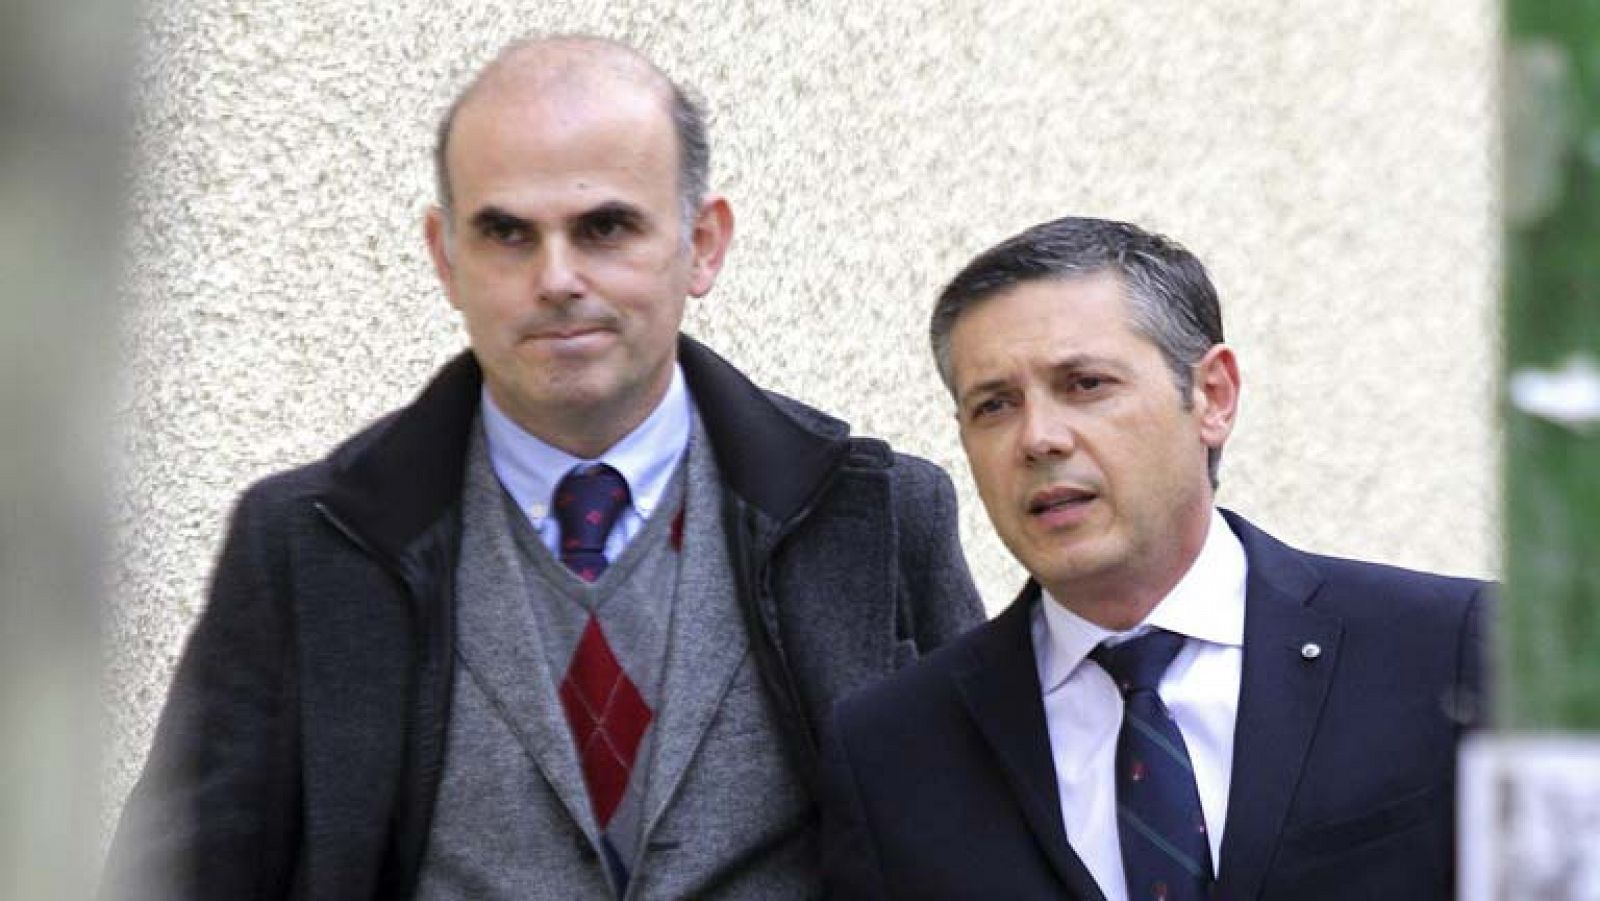 El abogado Francisco Carbajal, presunto autor del vídeo de la infanta, a disposición judicial 